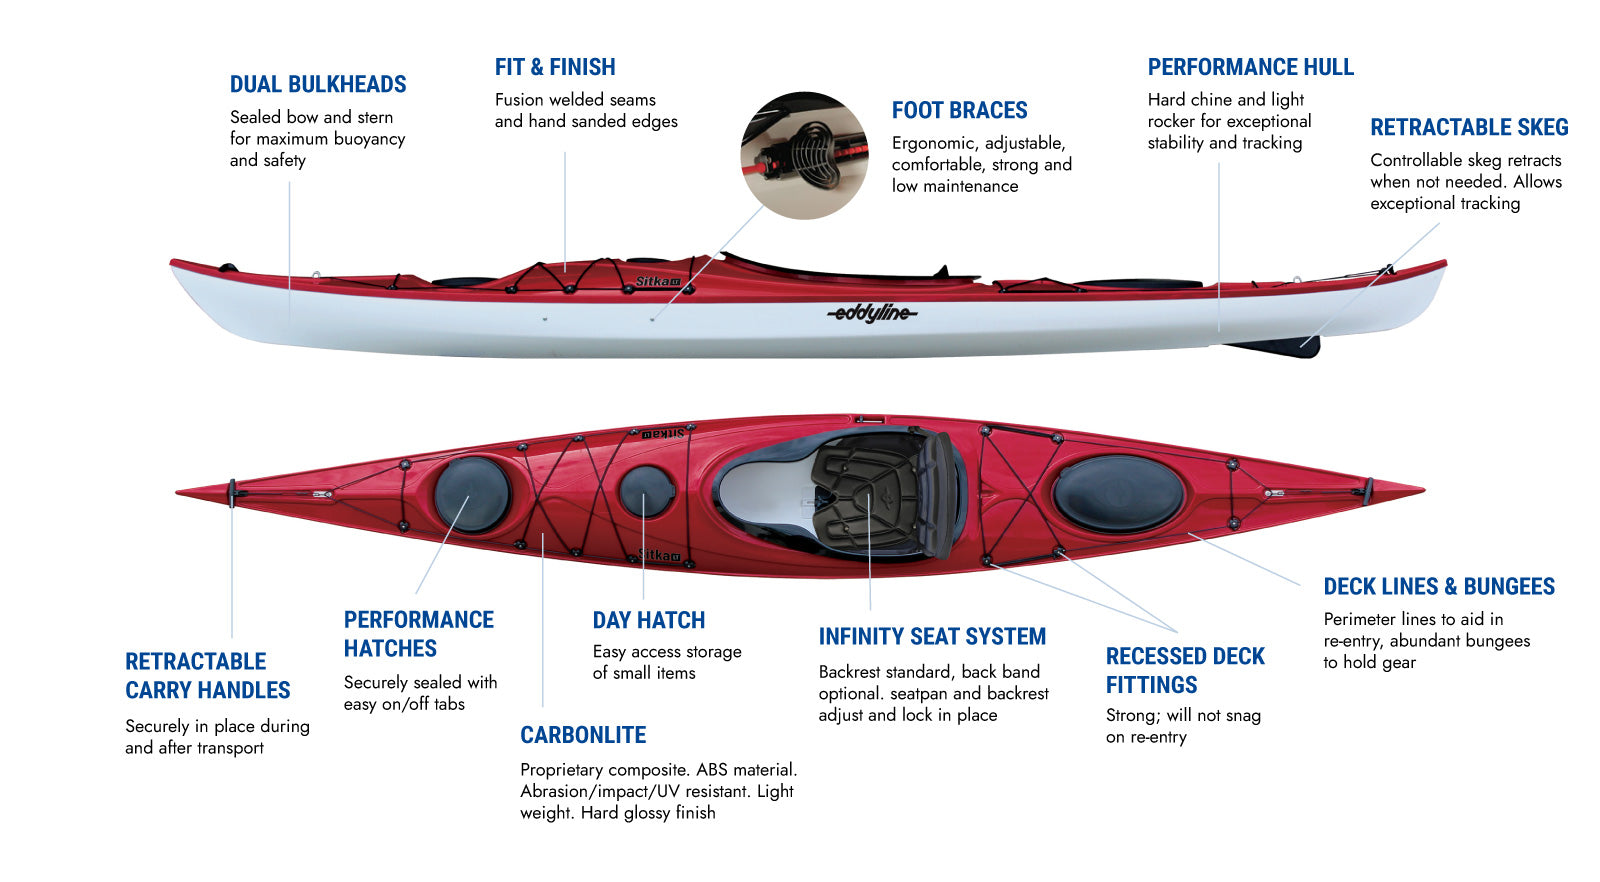 Eddyline Kayaks - Lightweight Touring, Recreational, Sit on Top Kayaks